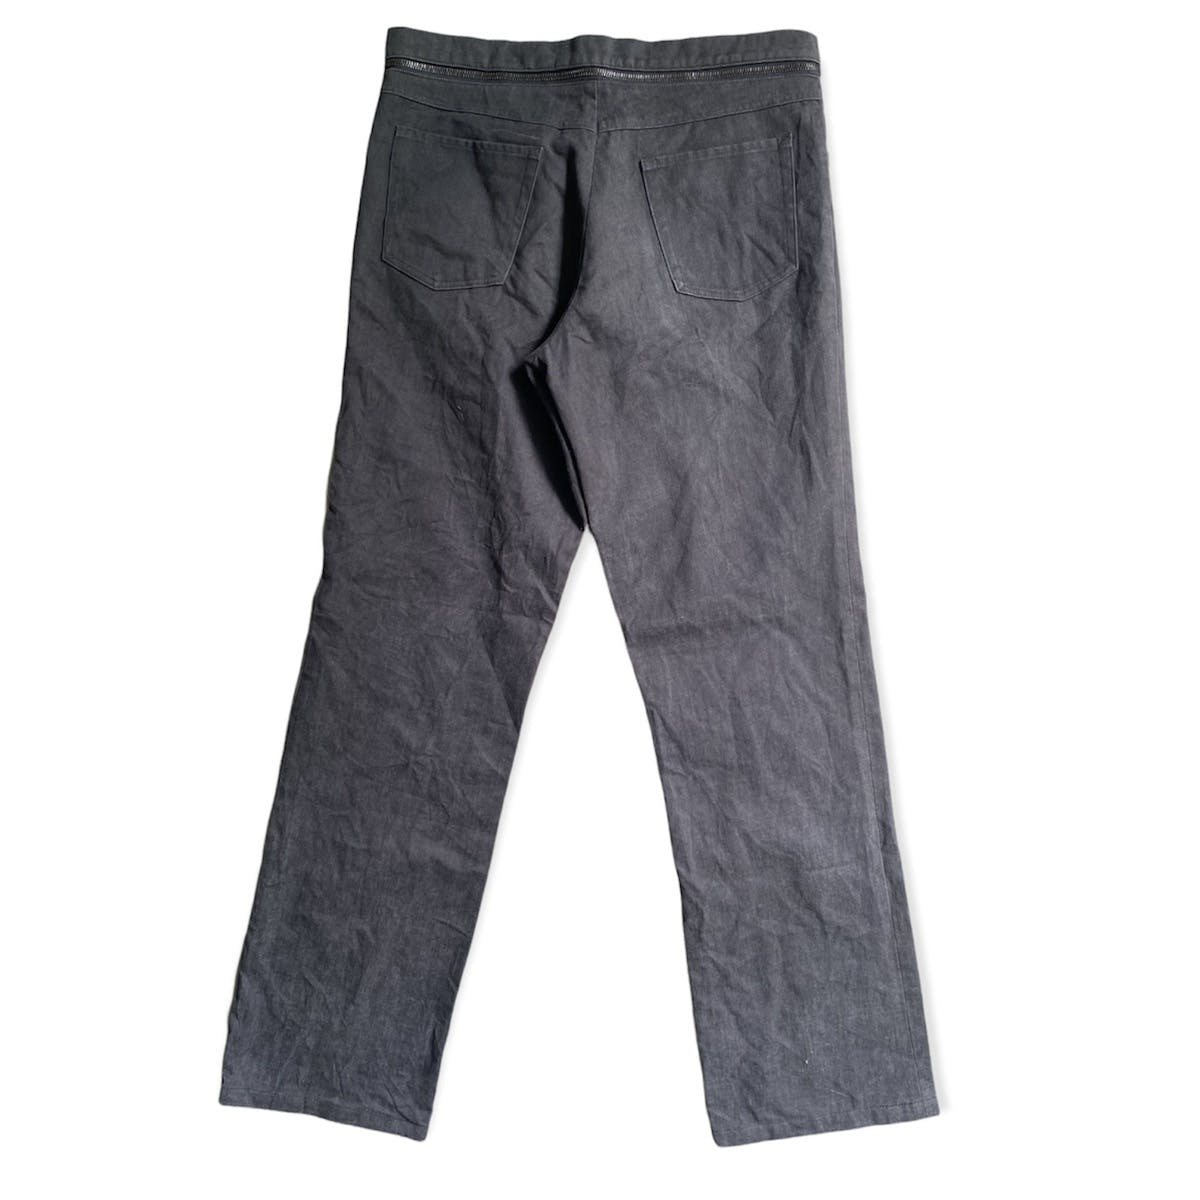 AW02-03 Waist Zip Deconstructed Pants - 3